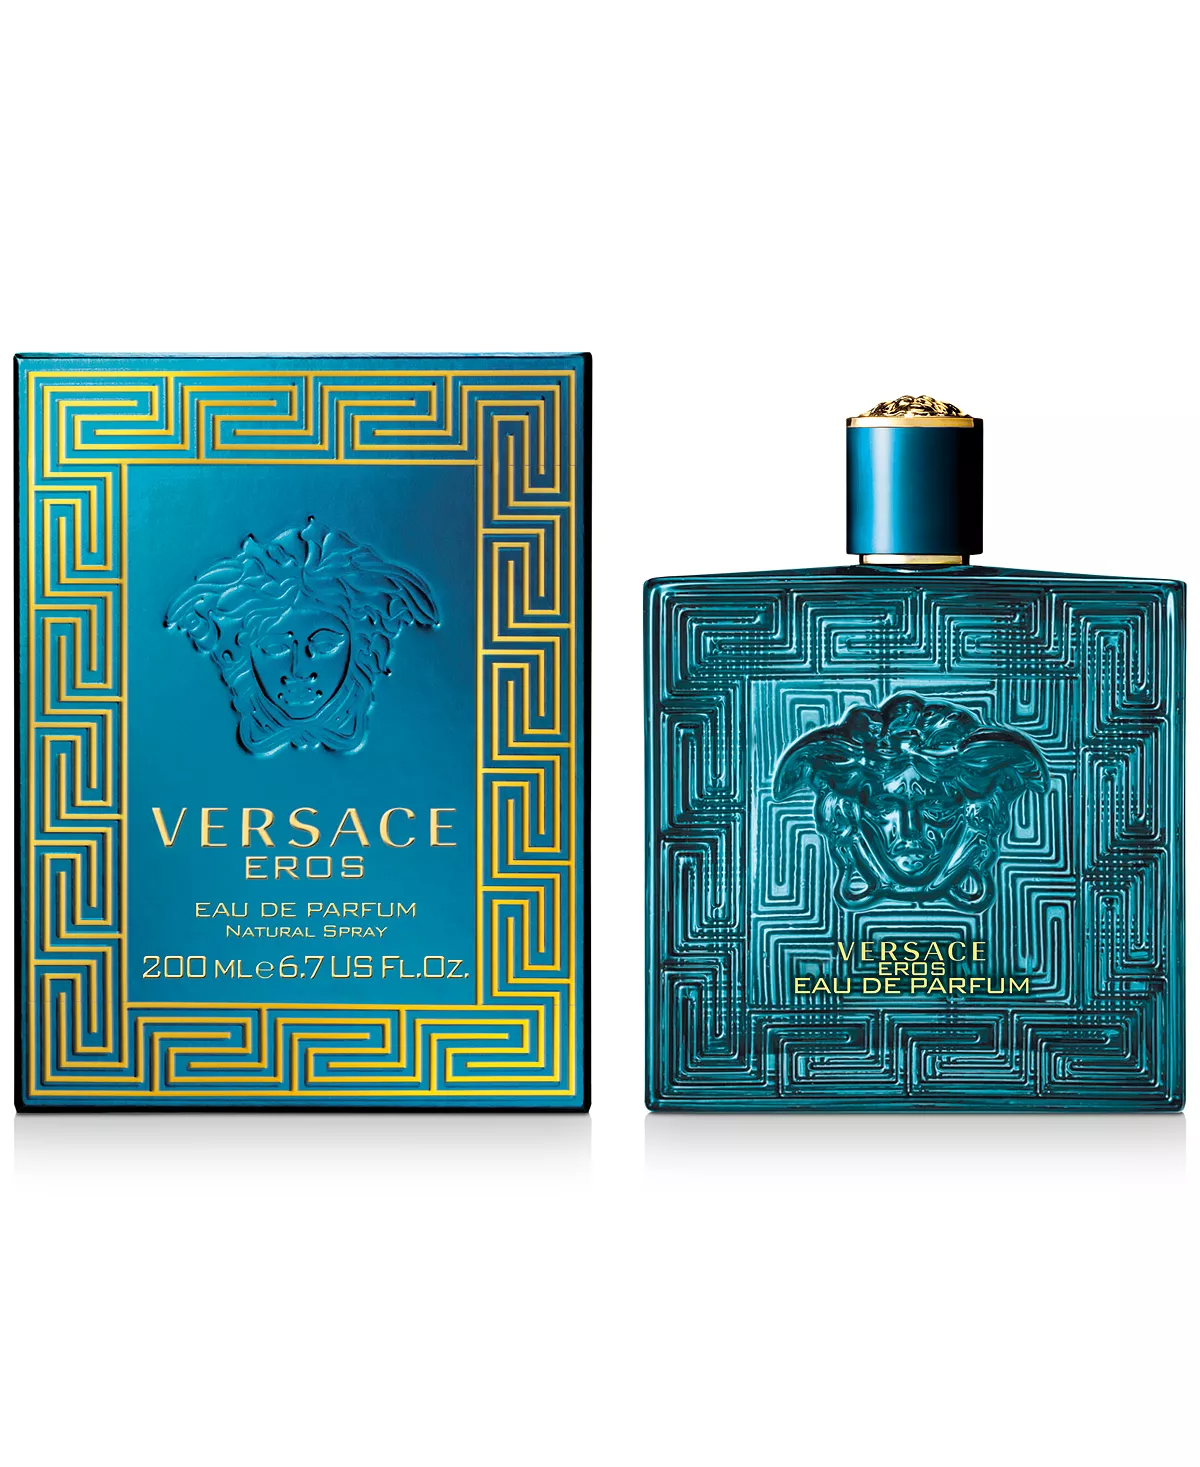 Versace Eros Eau de Parfum, Cologne for Men, 6.7 oz - image 2 of 6